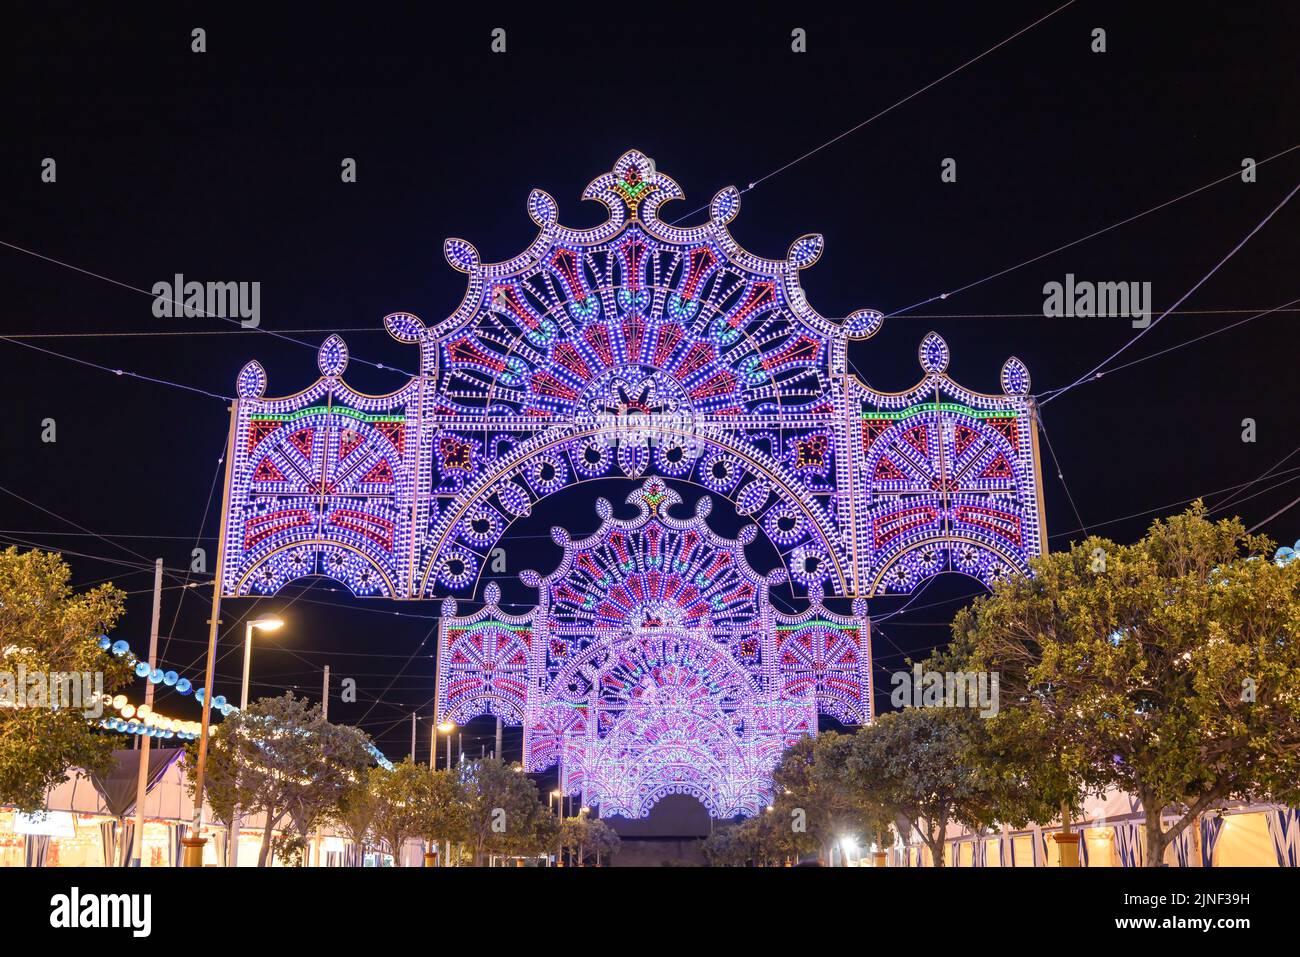 La decoración de las luces de Fiestas Colombinas celebraciones en la ciudad de Huelva (Fiestas Colombinas de Huelva), para conmemorar el primer viaje de Ch Foto de stock